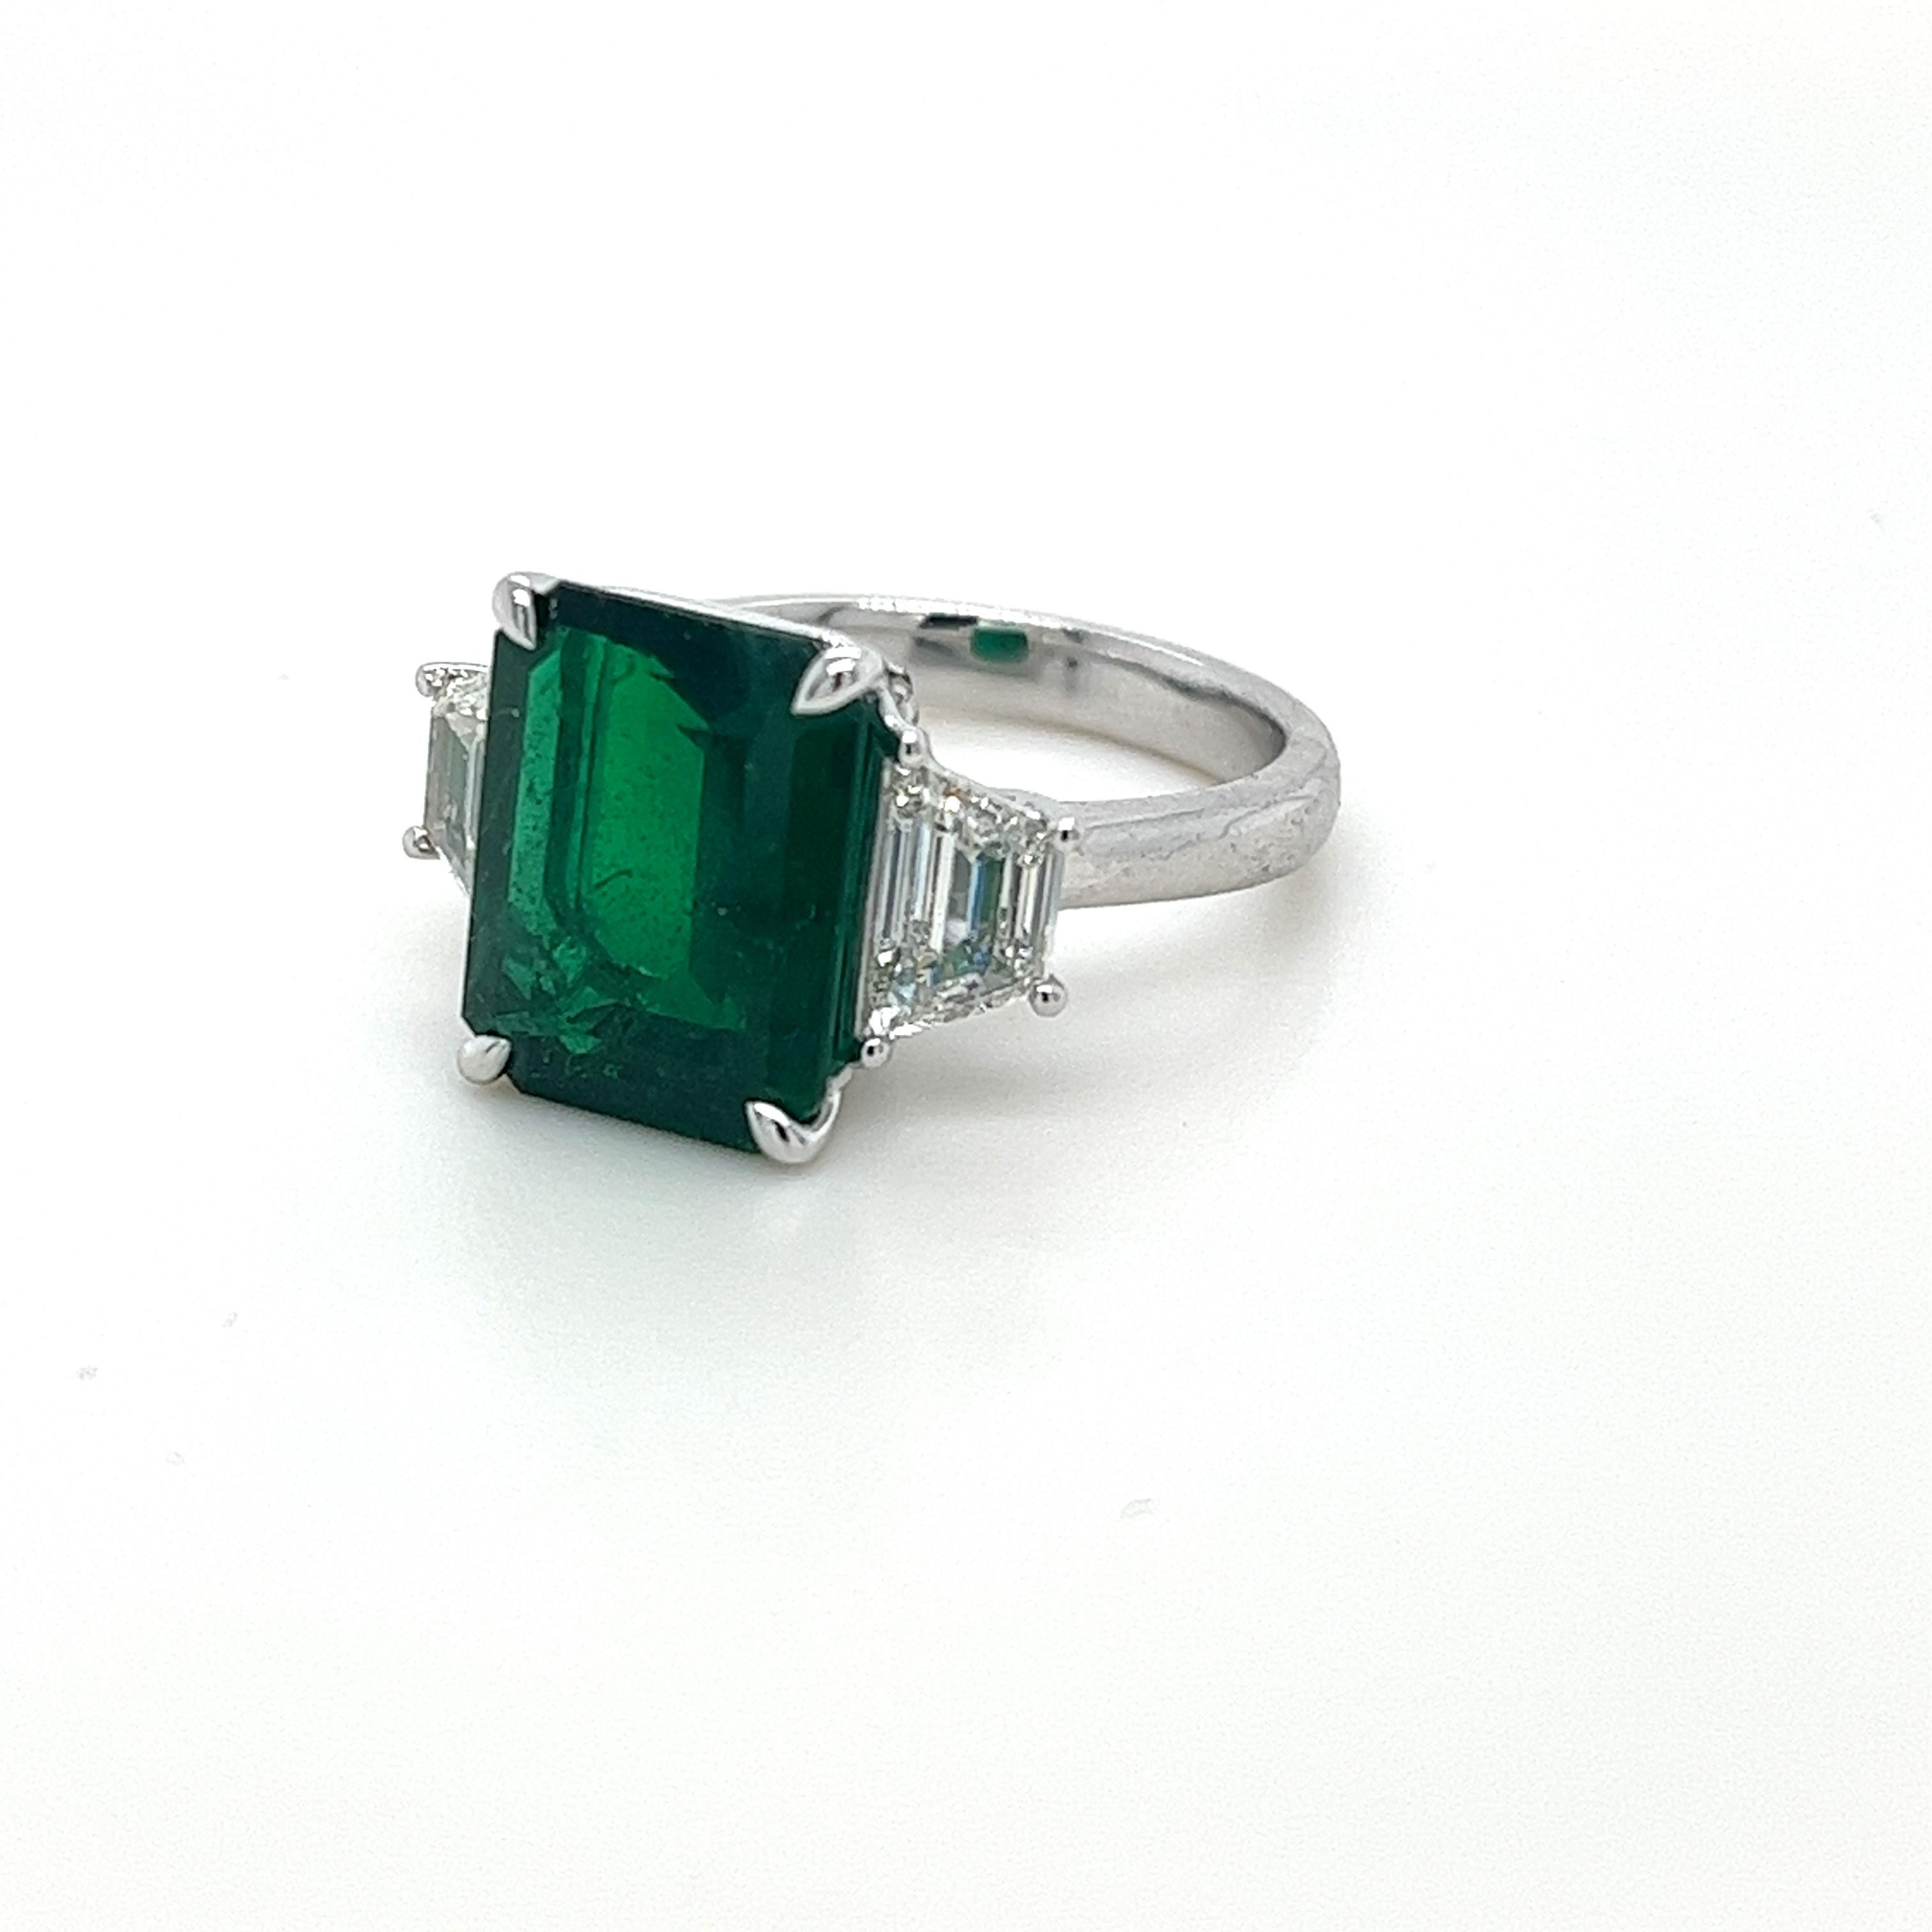 Smaragd-Schliff Smaragd mit 5,03 Karat
Messung (12,5x9,9) mm
Trapezförmige Diamanten mit einem Gewicht von 1,02 Karat
Diamanten sind G-VS1
In Platin gefasster Ring
8,30 Gramm
Smaragd hat eine satte grüne Farbe